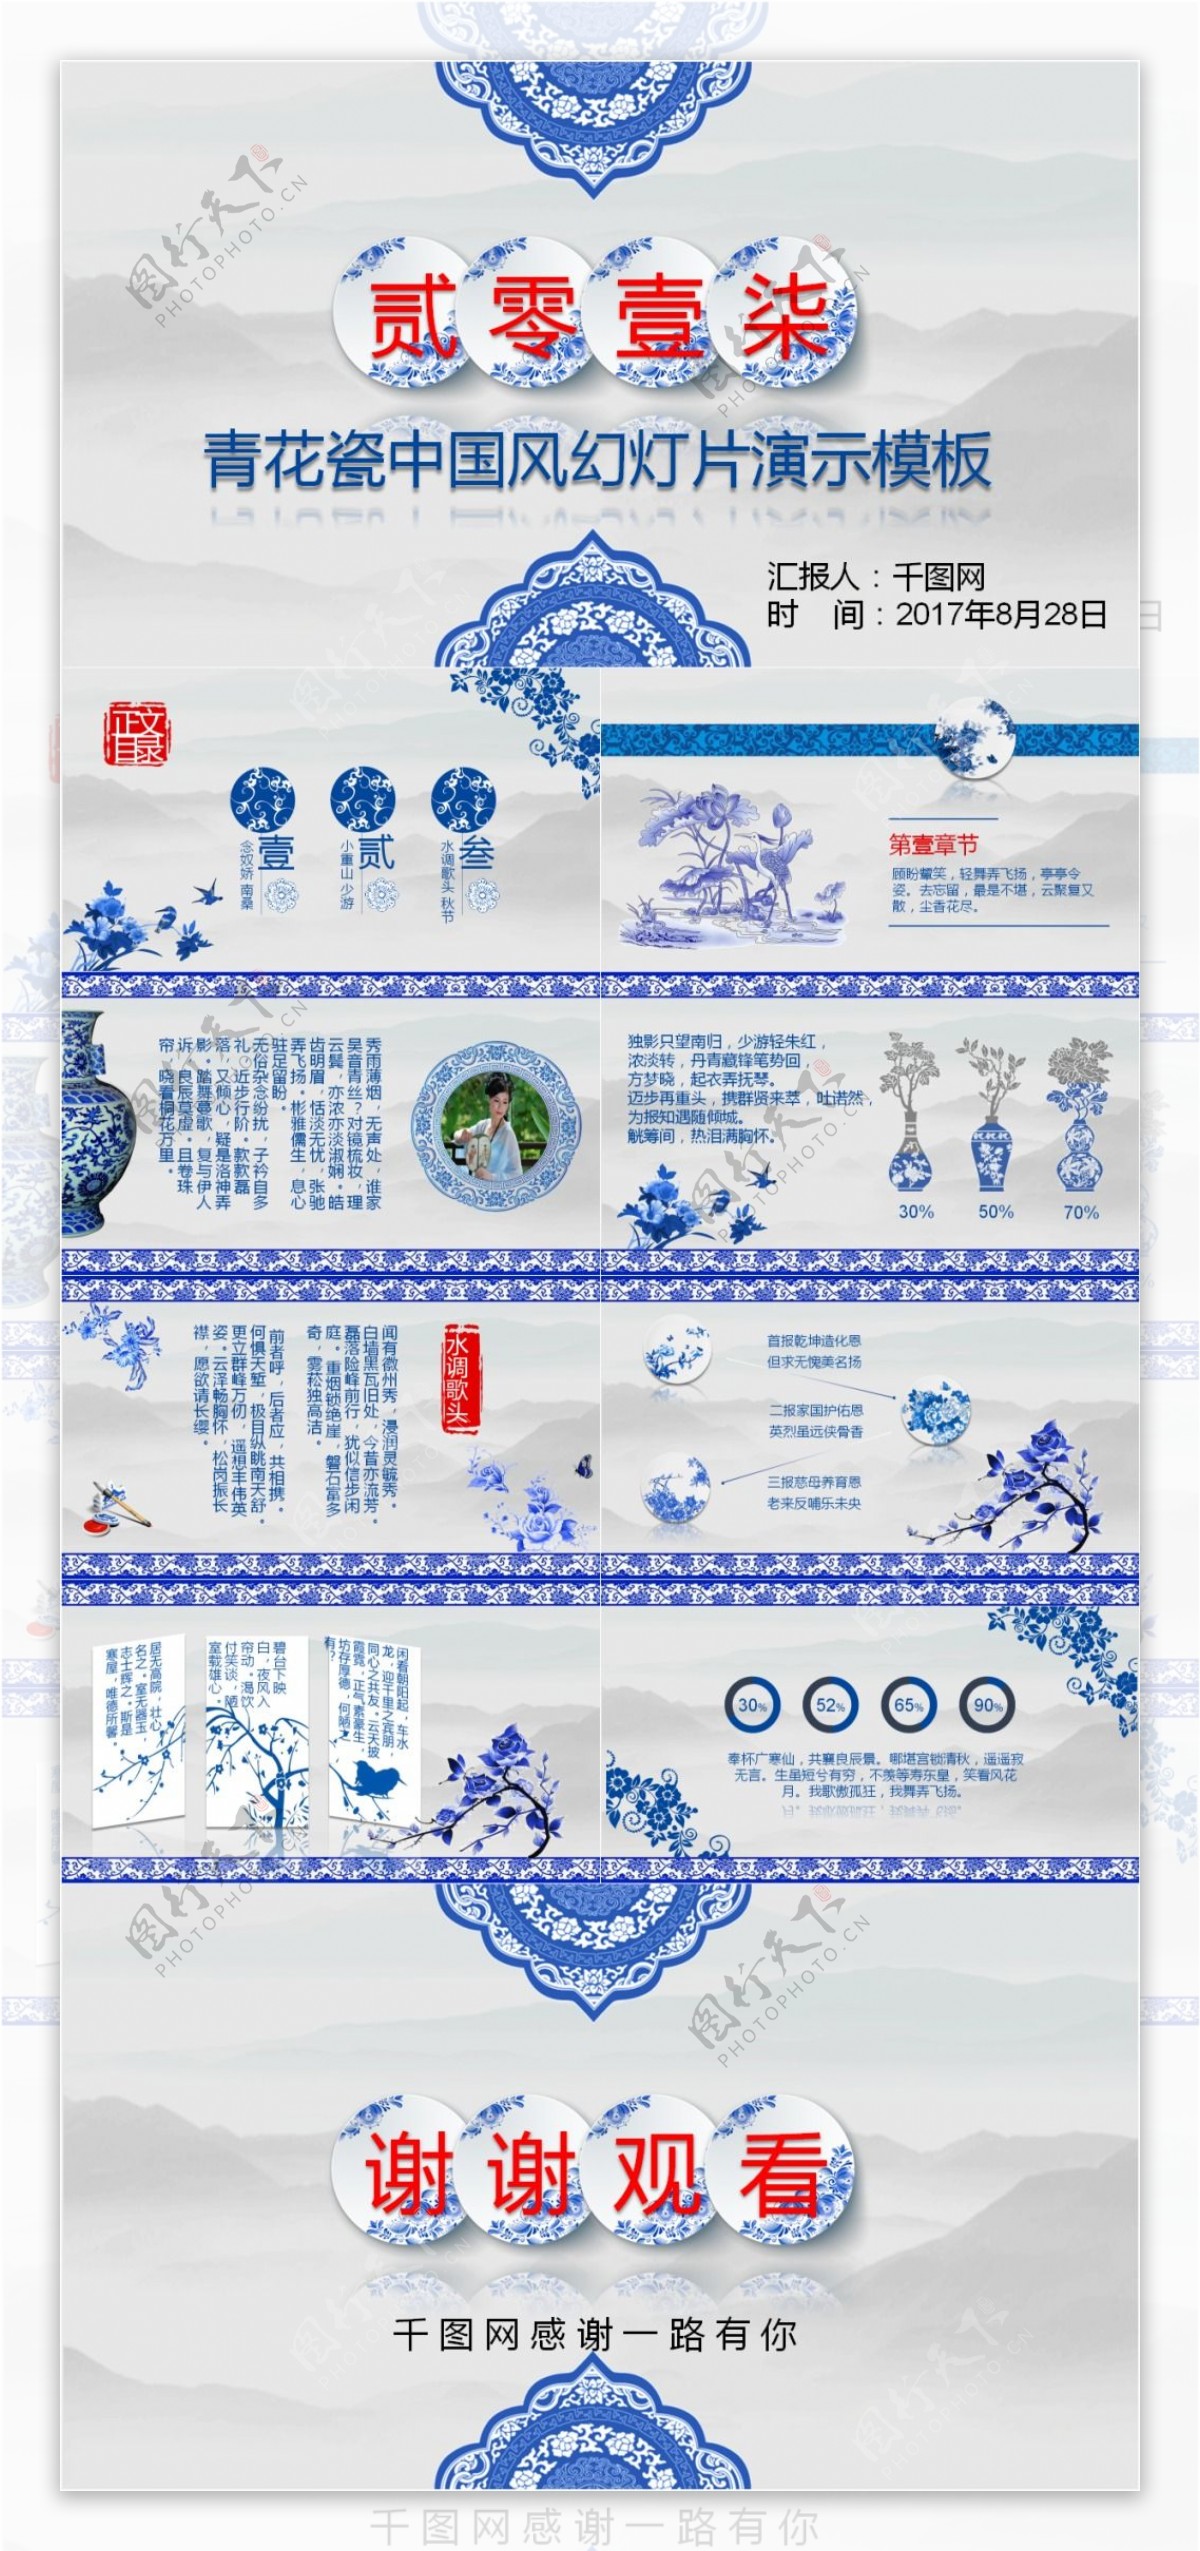 33青花瓷中国风幻灯片演示模板